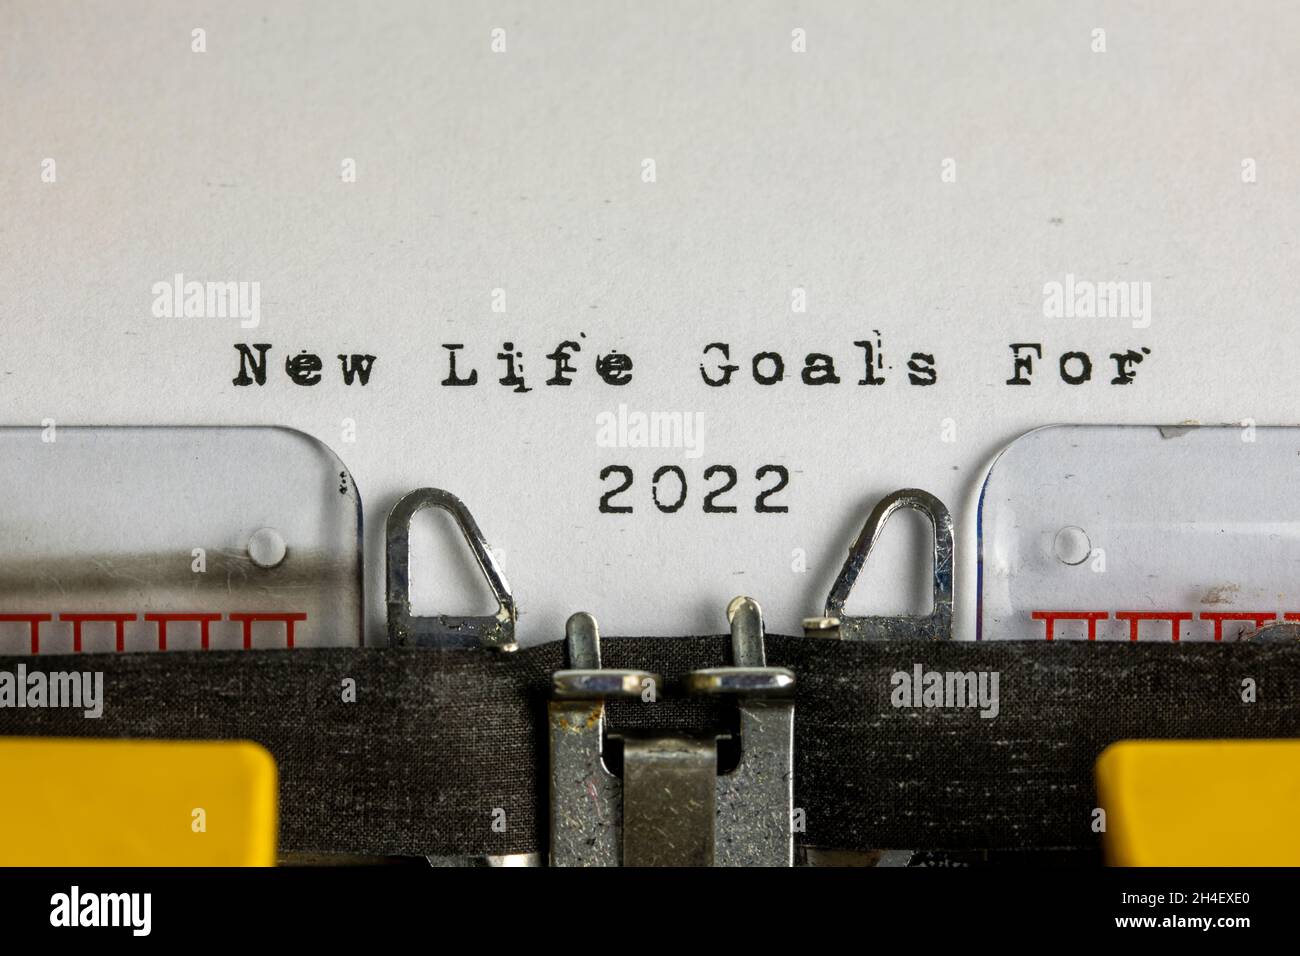 Nouveaux objectifs de vie pour 2022 écrits sur une vieille machine à écrire Banque D'Images